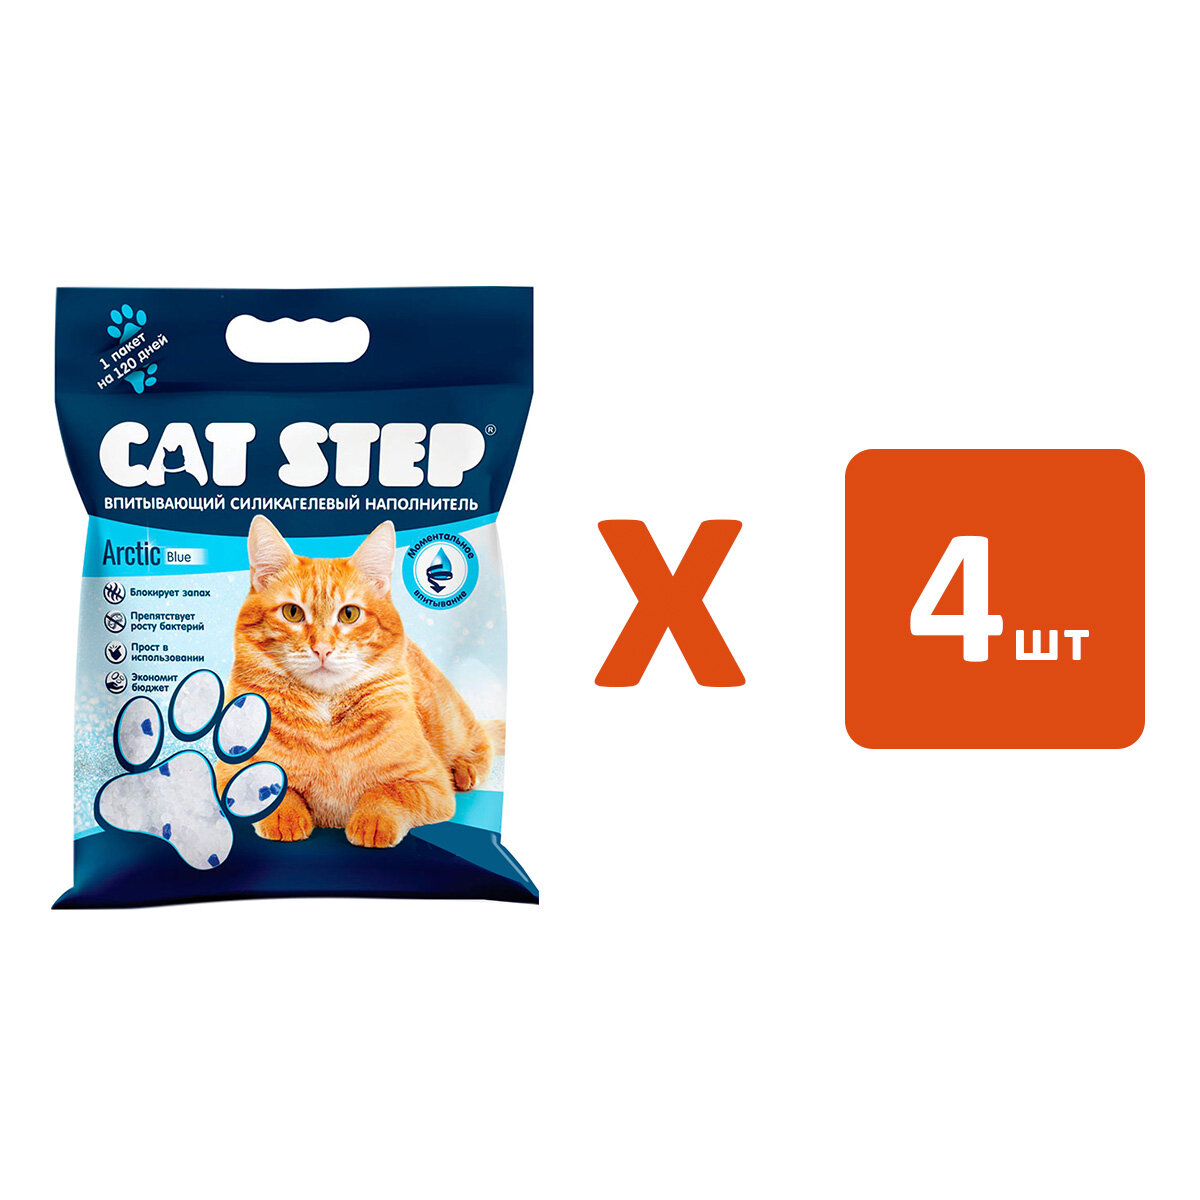 CAT STEP ARCTIC BLUE наполнитель силикагелевый впитывающий для туалета кошек (15,2 л х 4 шт)